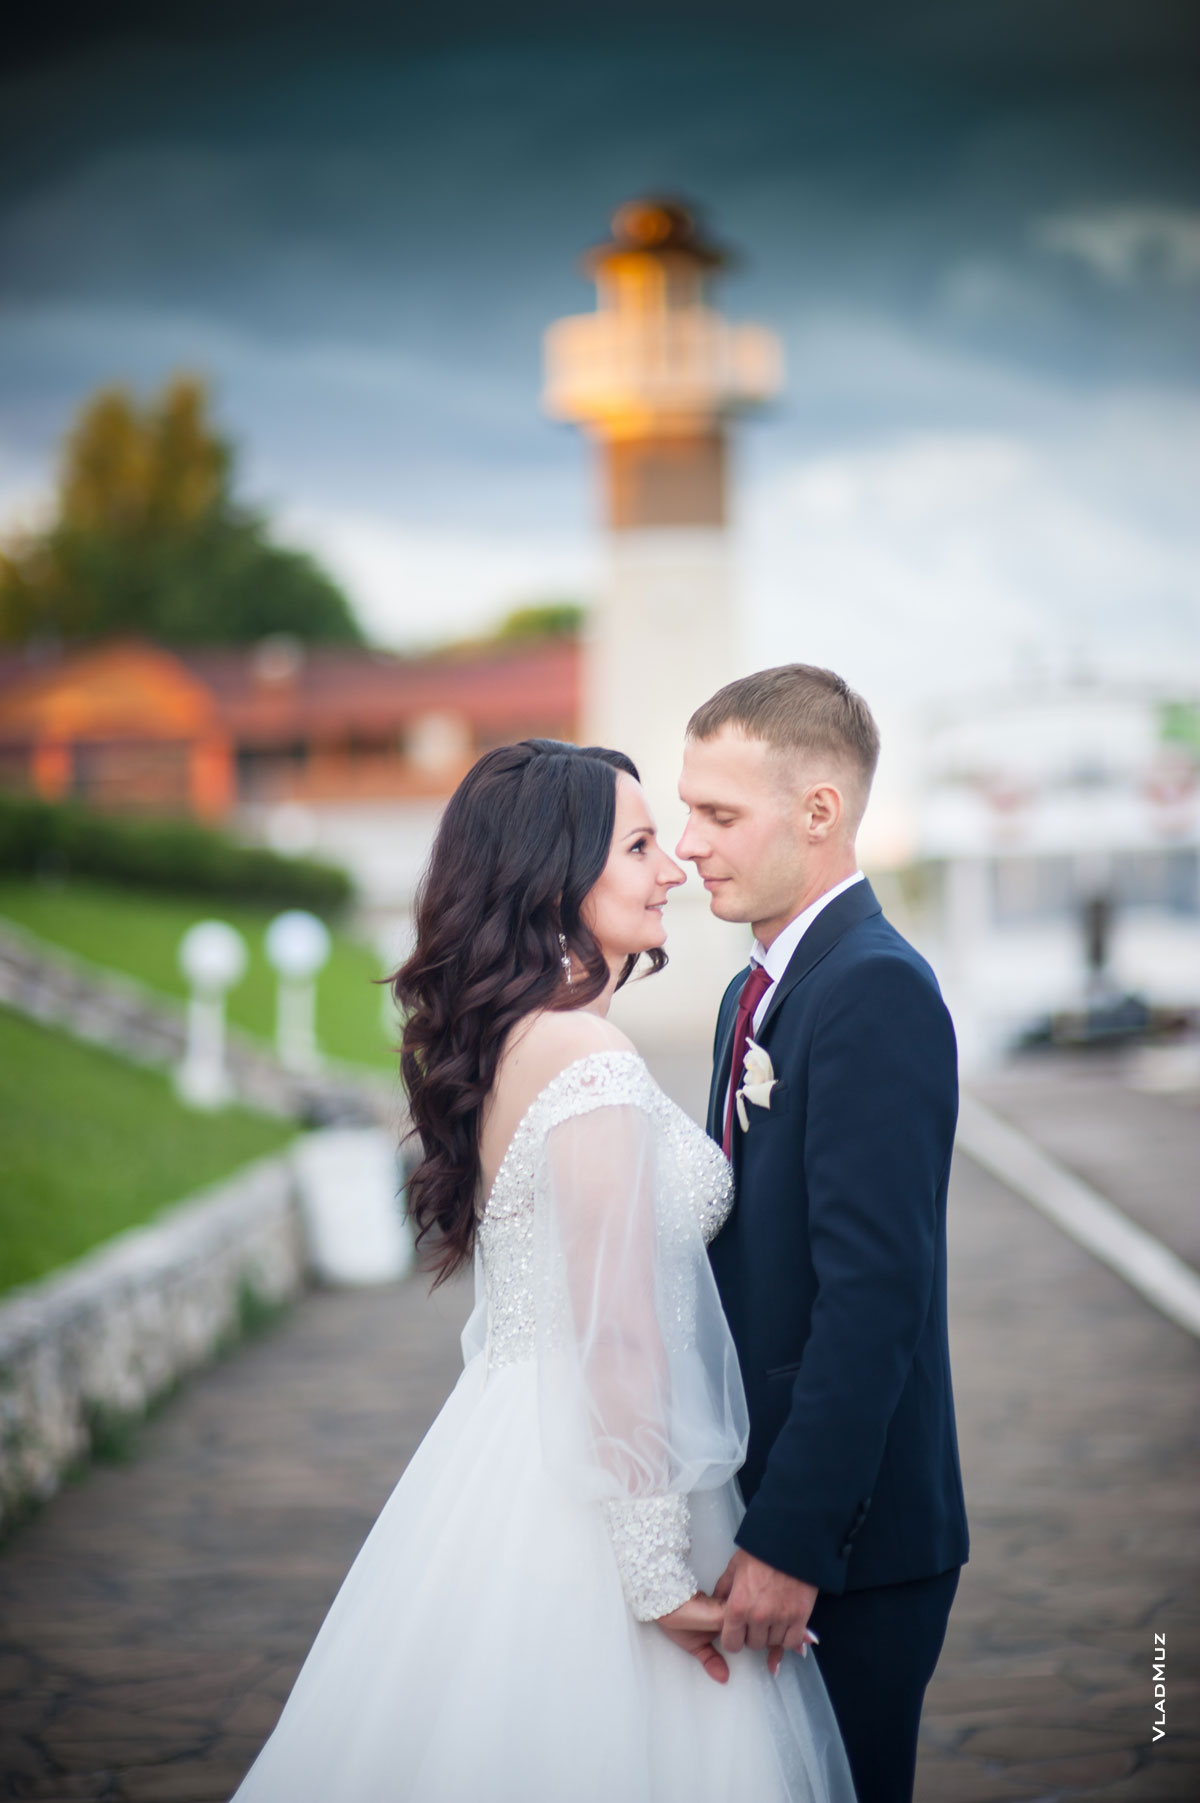 Фото жениха с невестой напротив друг друга, держащихся за руки, на фоне маяка комплекса «Белый берег»